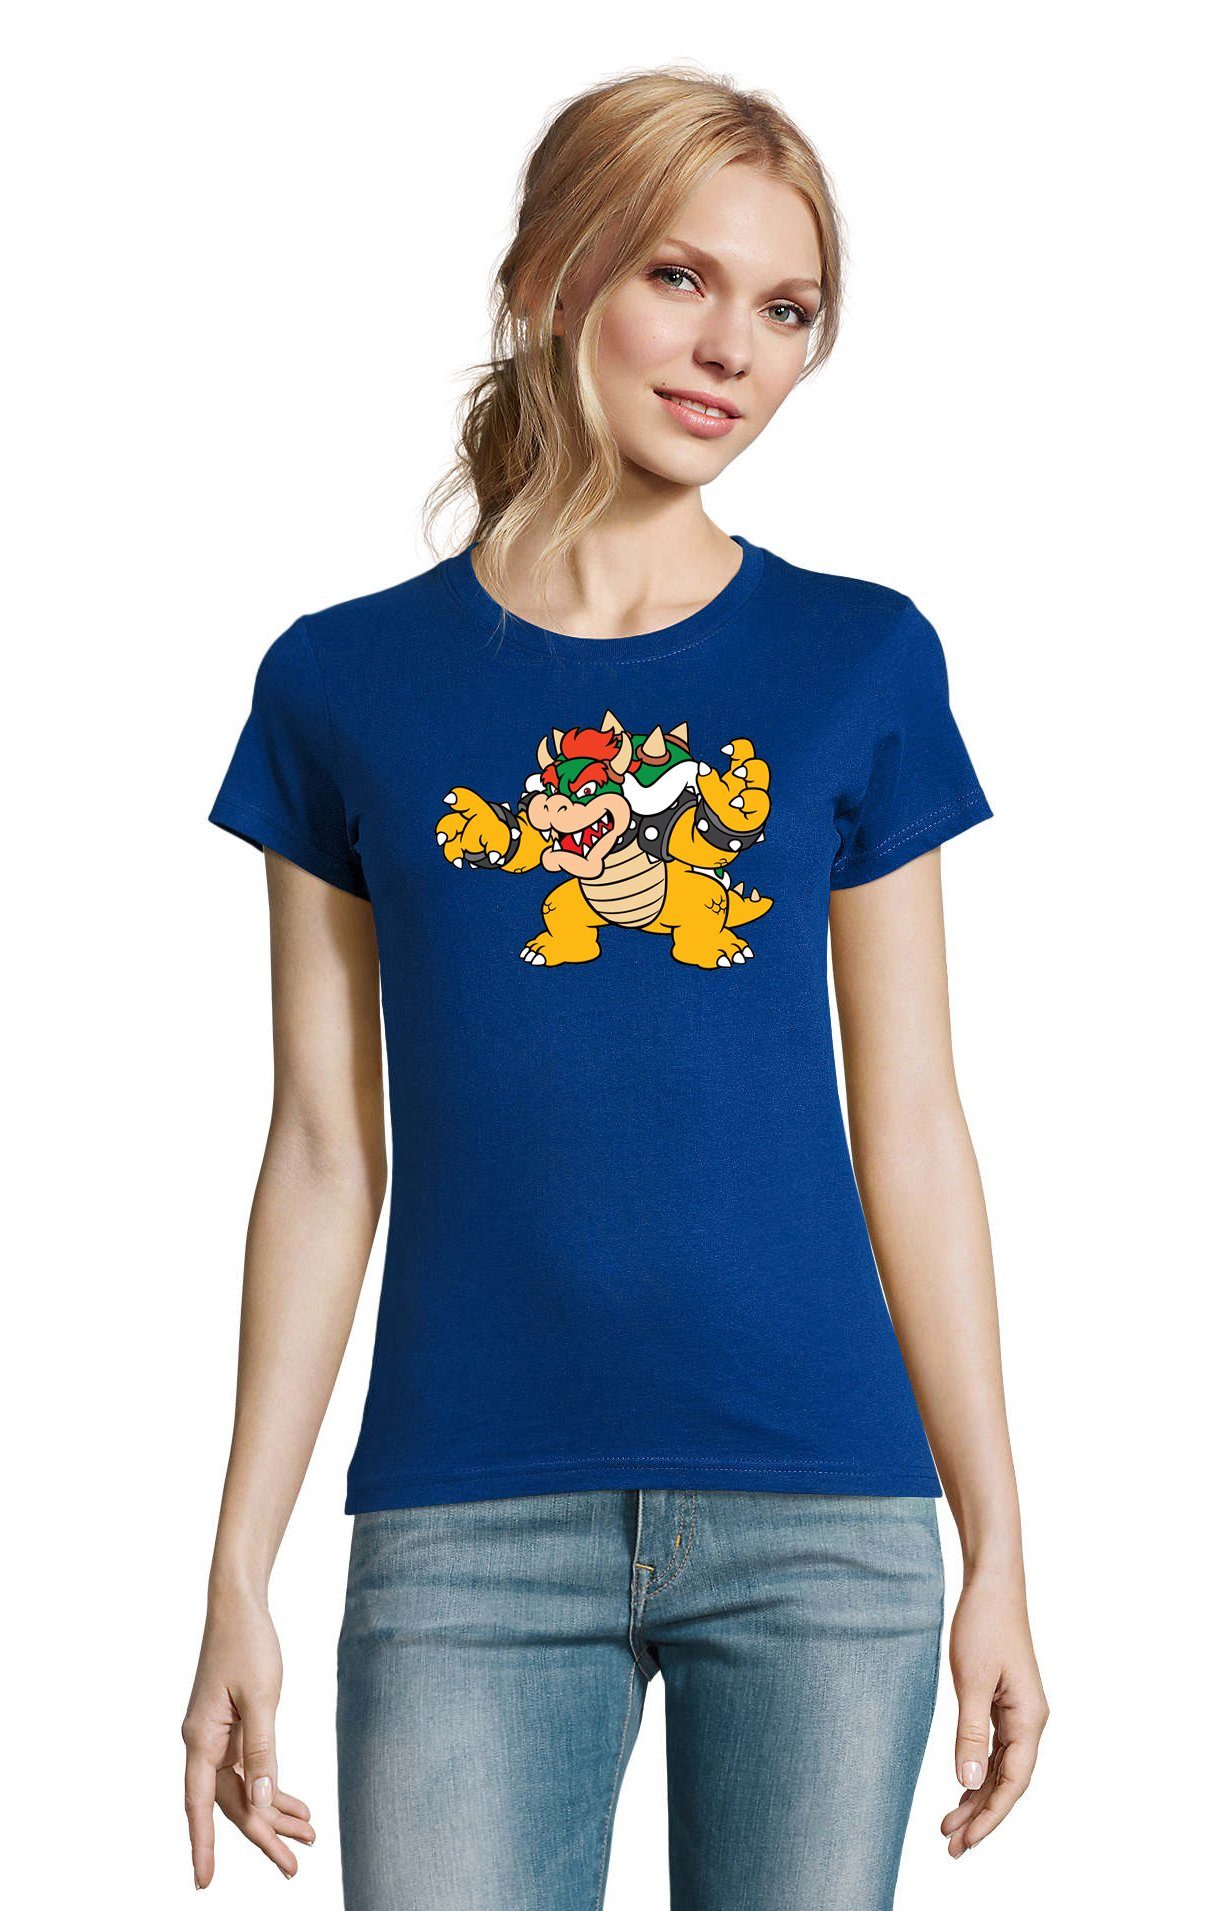 Brownie Yoshi T-Shirt Konsole Blondie Luigi & Nintendo Damen Blau Mario Bowser Gamer Game Gaming